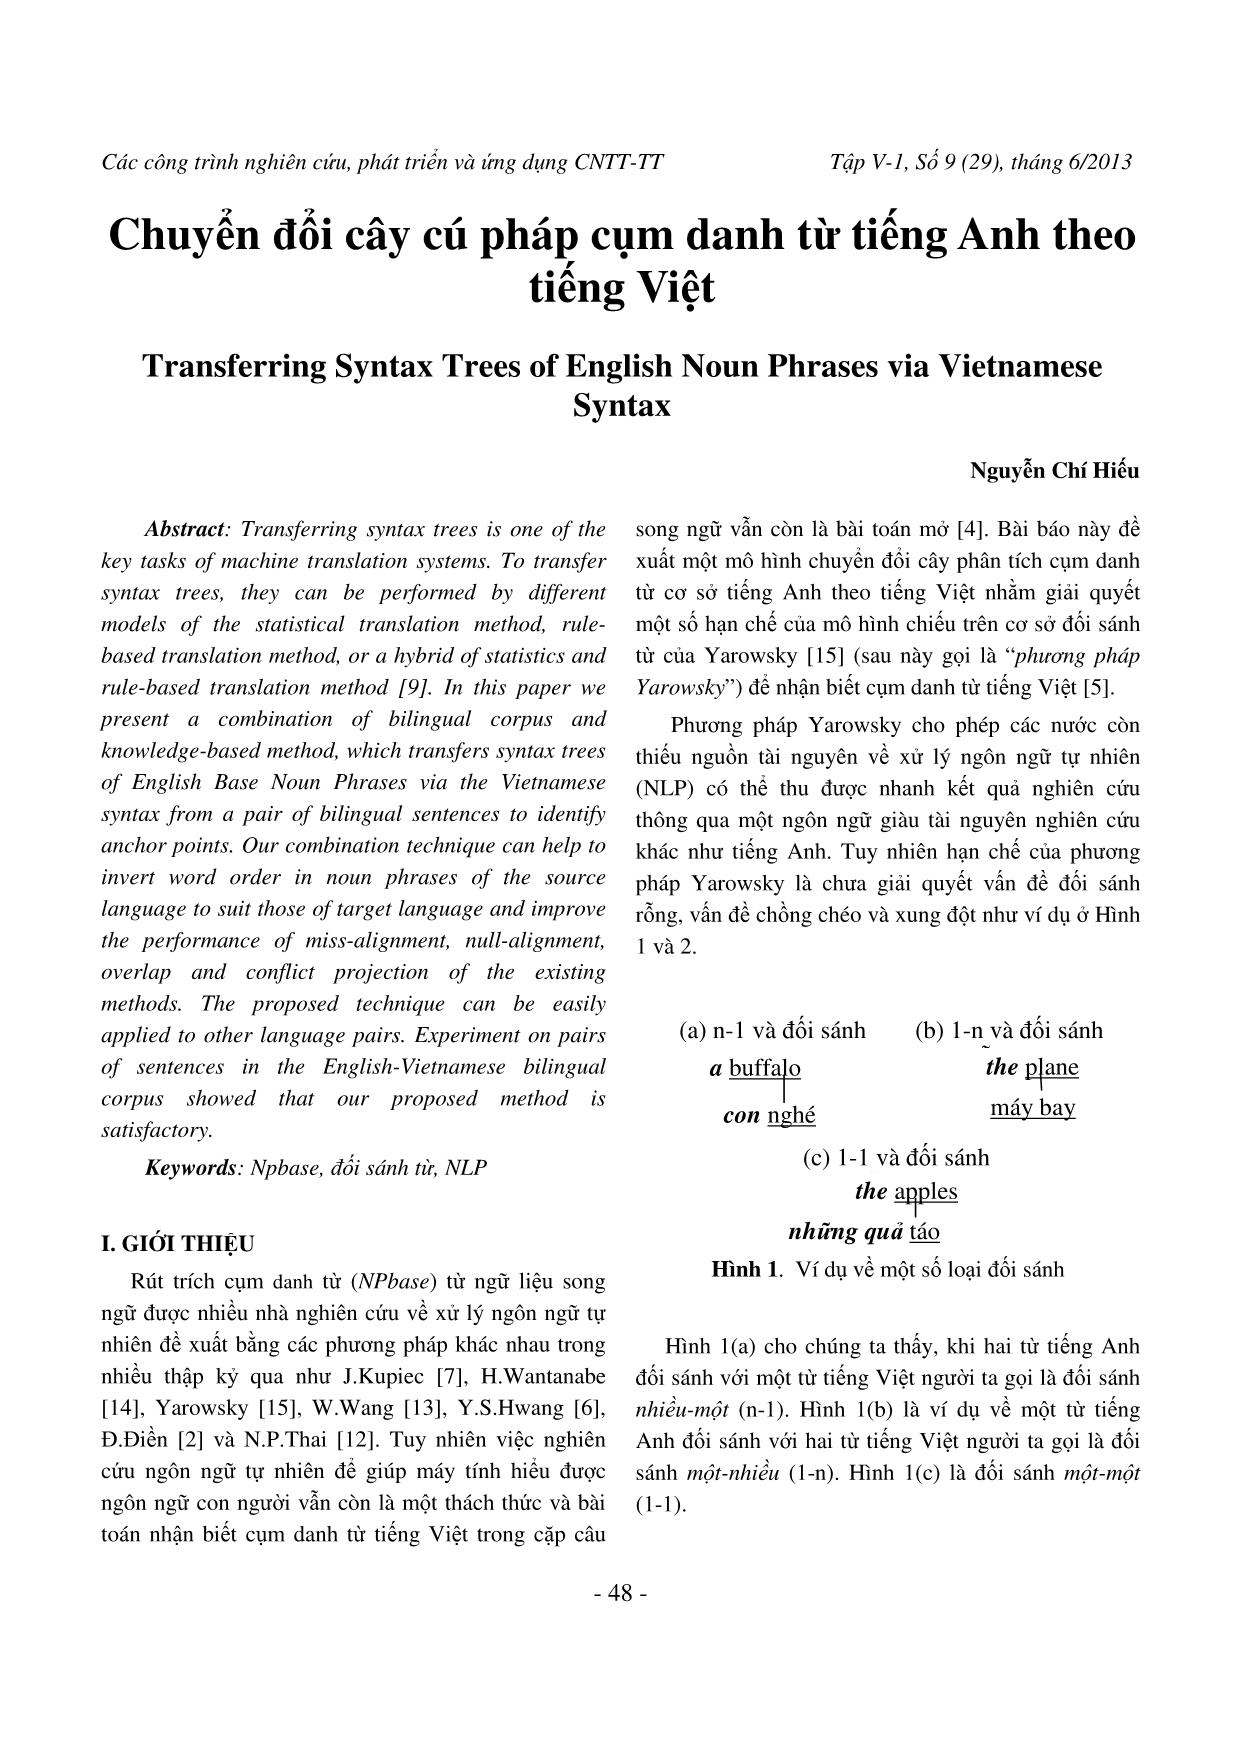 Chuyển đổi cây cú pháp cụm danh từ tiếng Anh theo tiếng Việt trang 1